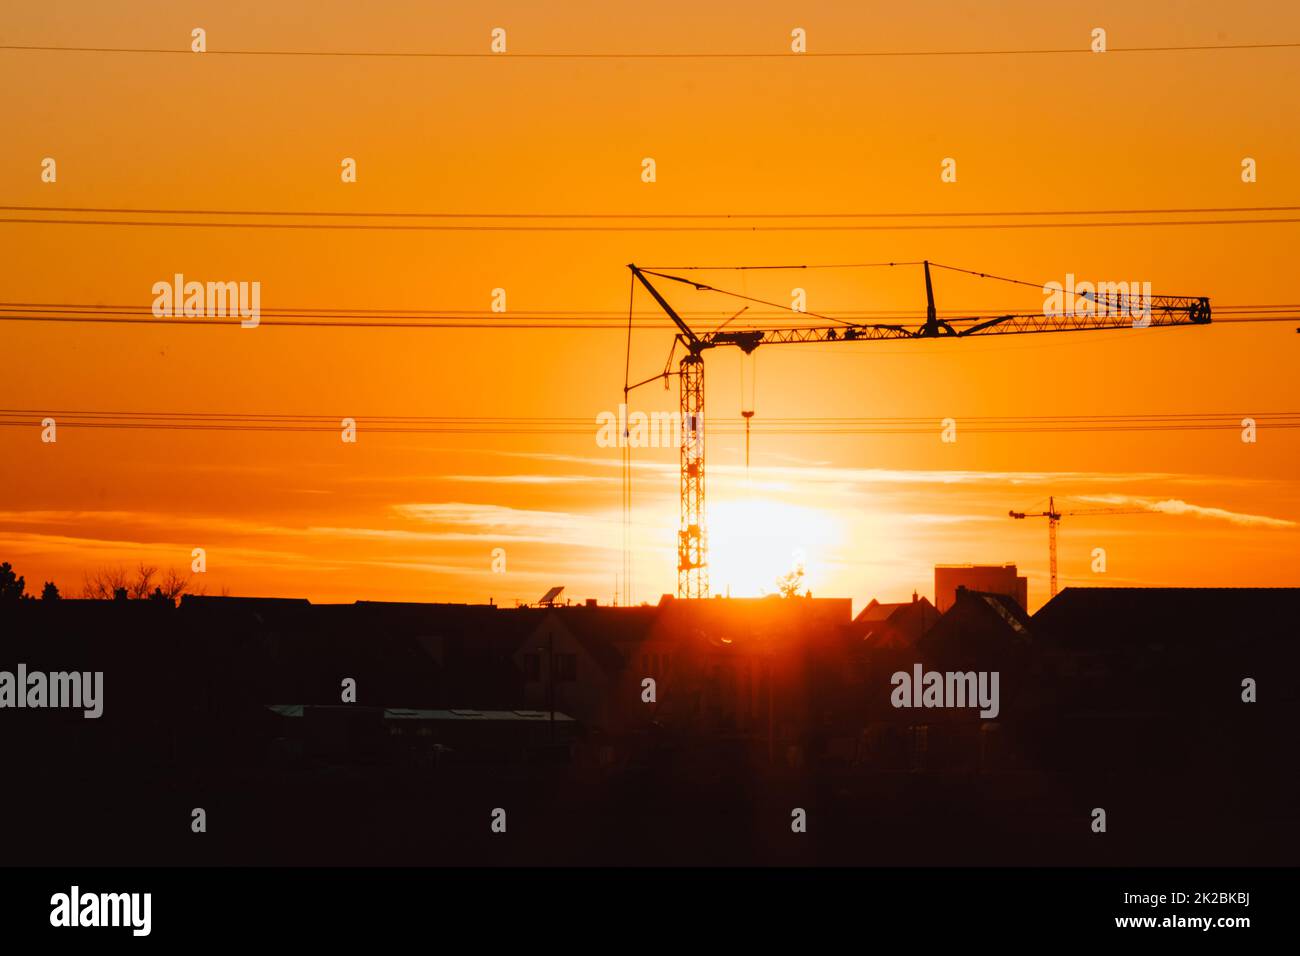 Die Silhouette eines hohen Baukrans in Orange zeigt den Sonnenuntergang auf der Baustelle mit Bauarbeiten für moderne Gebäude und Stadtentwicklung als architektonisches Teamwork für Hochspannungsleitungen von Wolkenkratzern Stockfoto